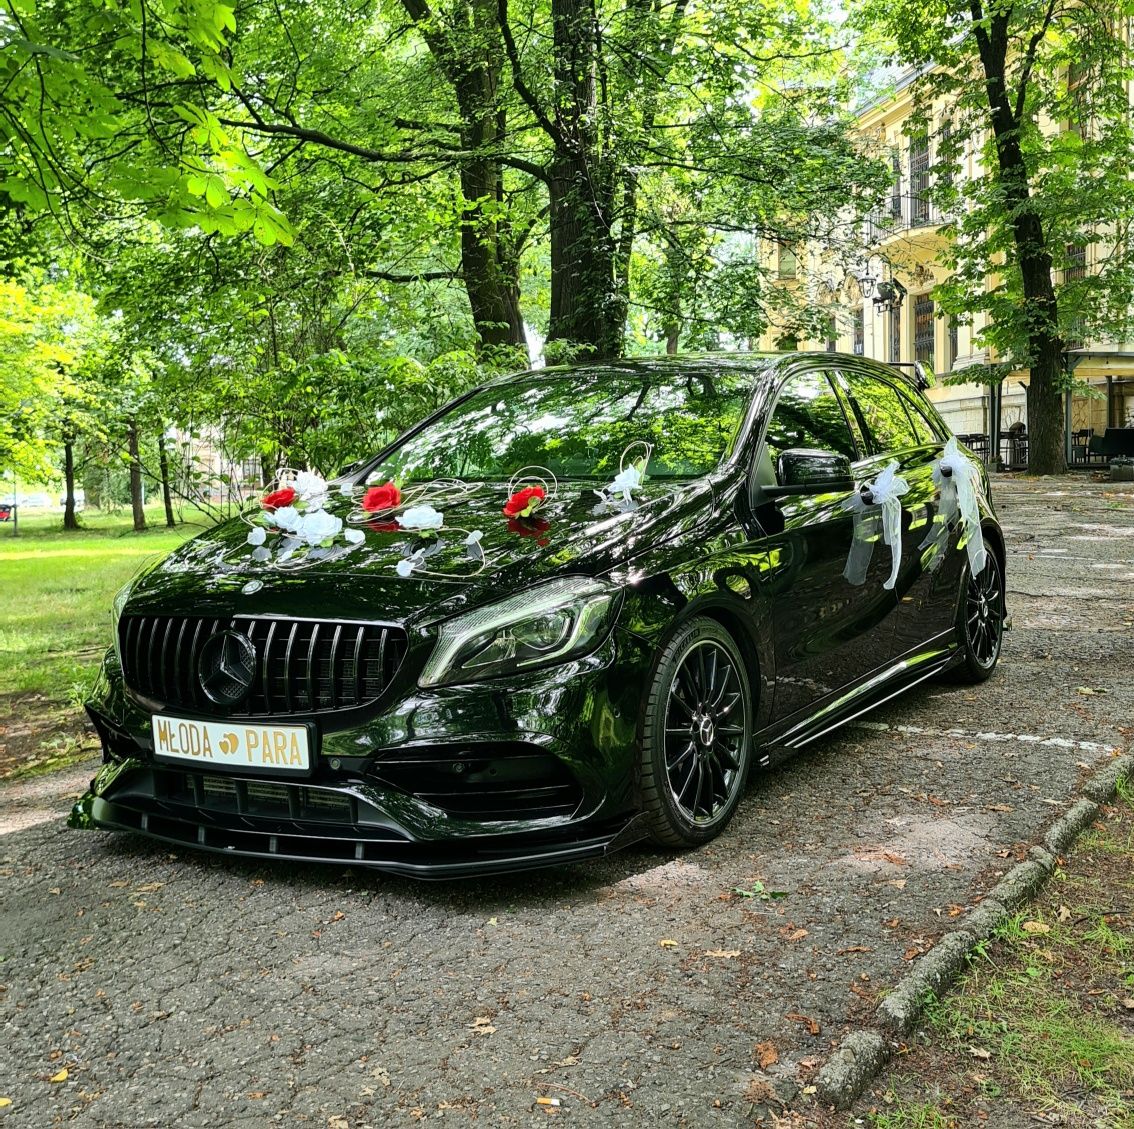 Auto Samochód do ślubu - jedyny taki Mercedes! imprezy okolicznościowe